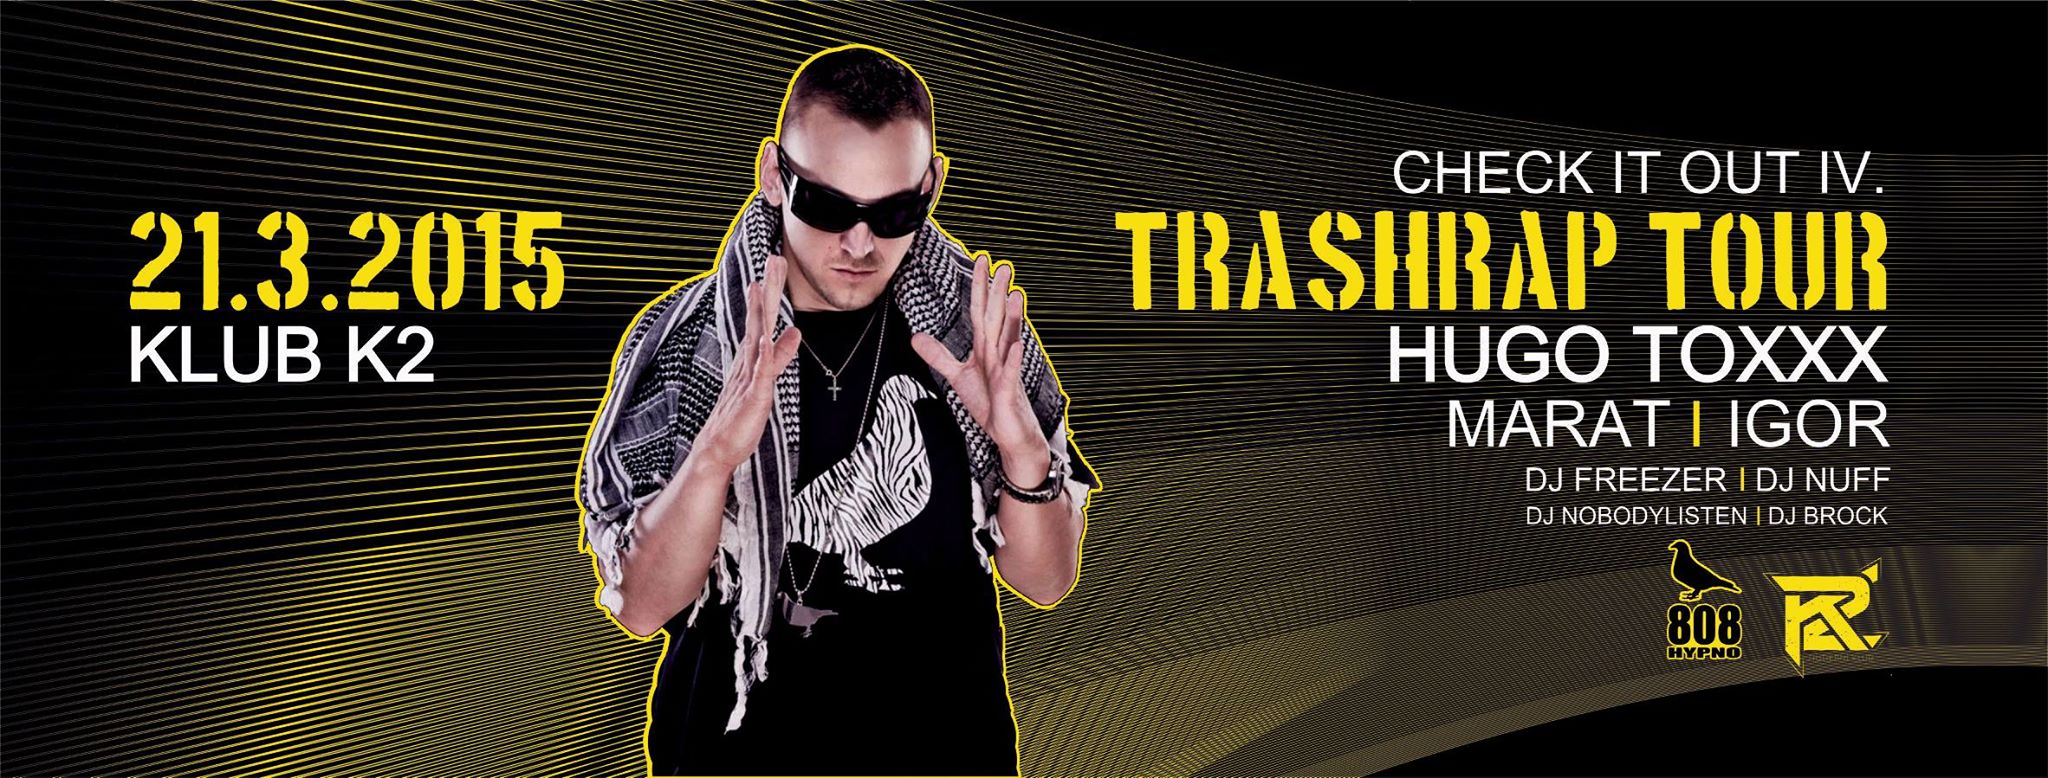 TrashRap Tour / Check it Out IV